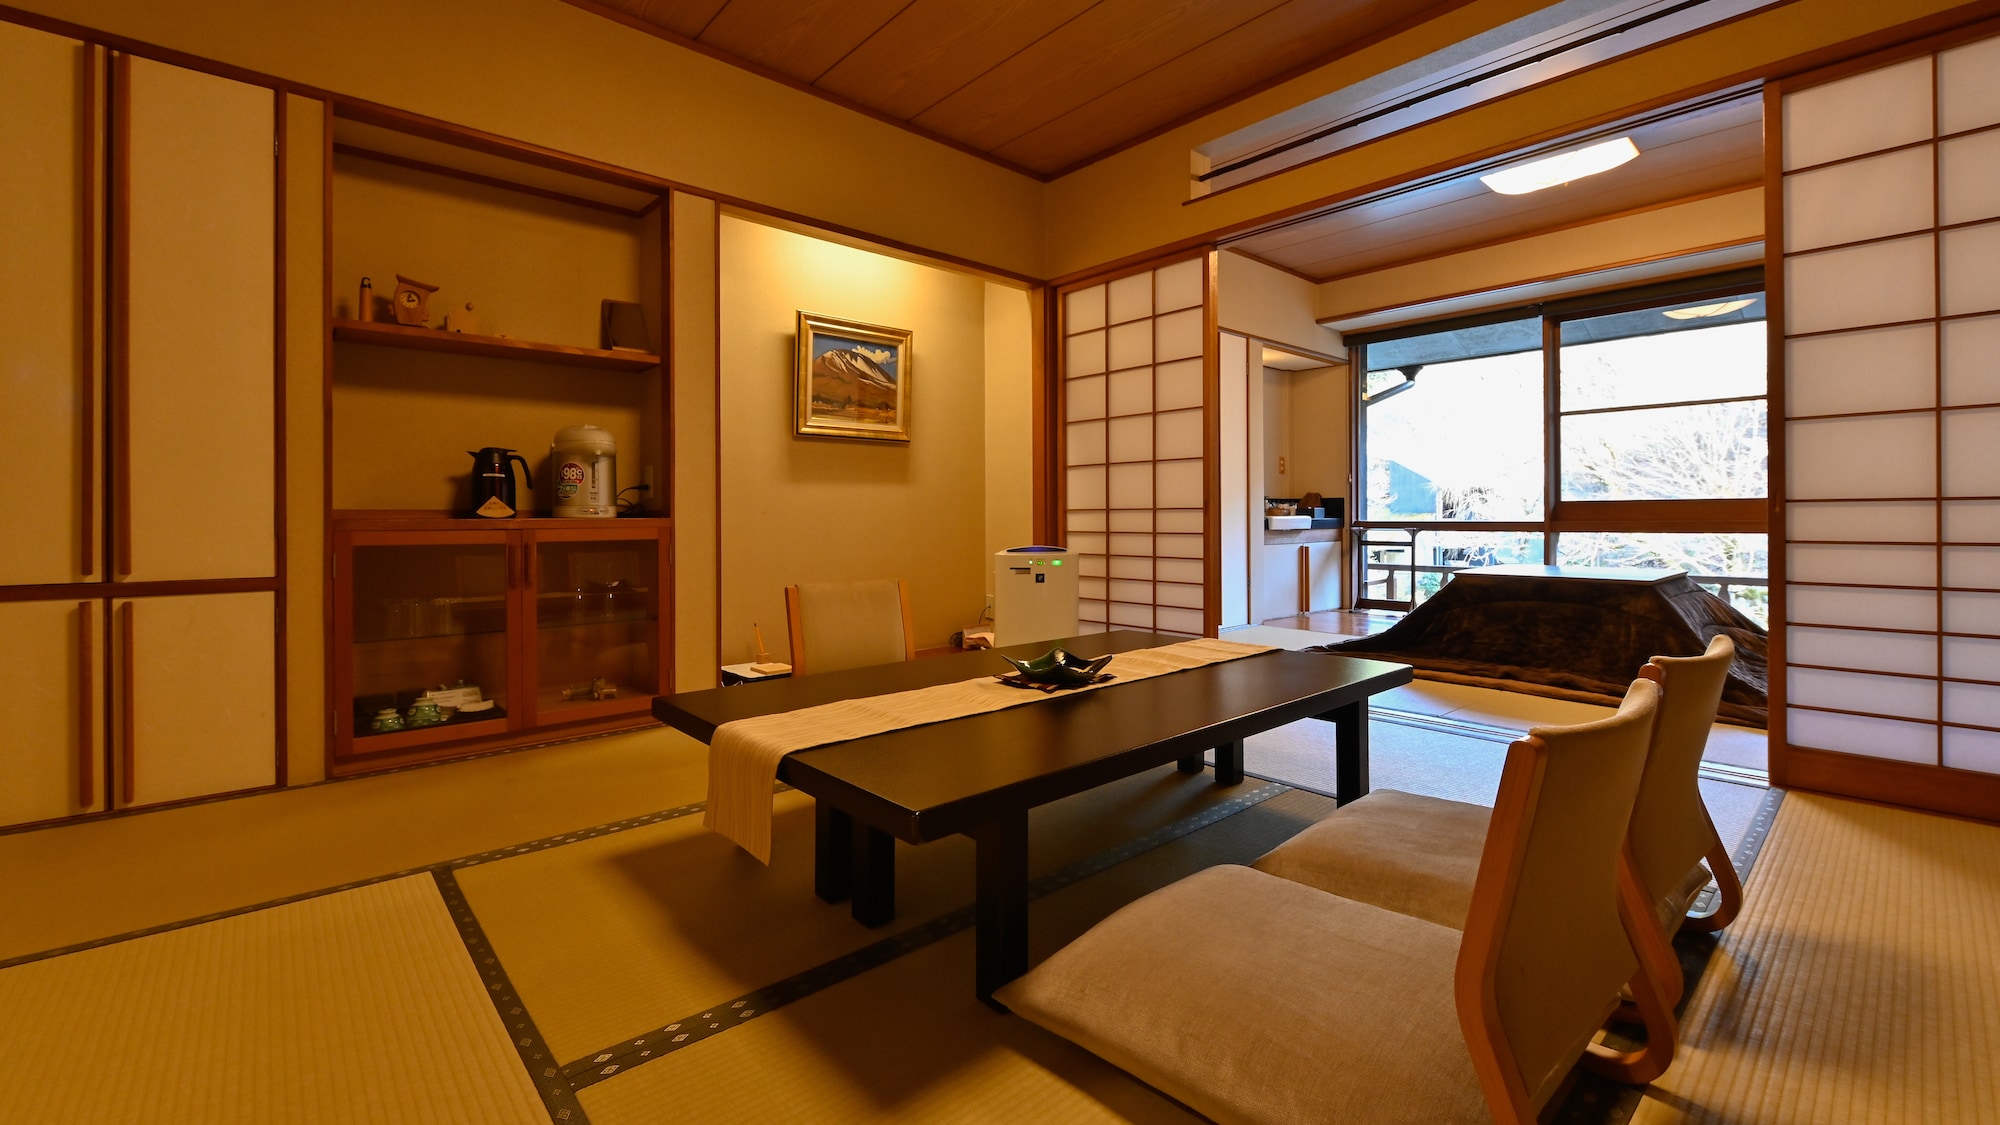 【清風館日式房間的例子】木頭的溫暖和復古的味道是受歡迎的房間。